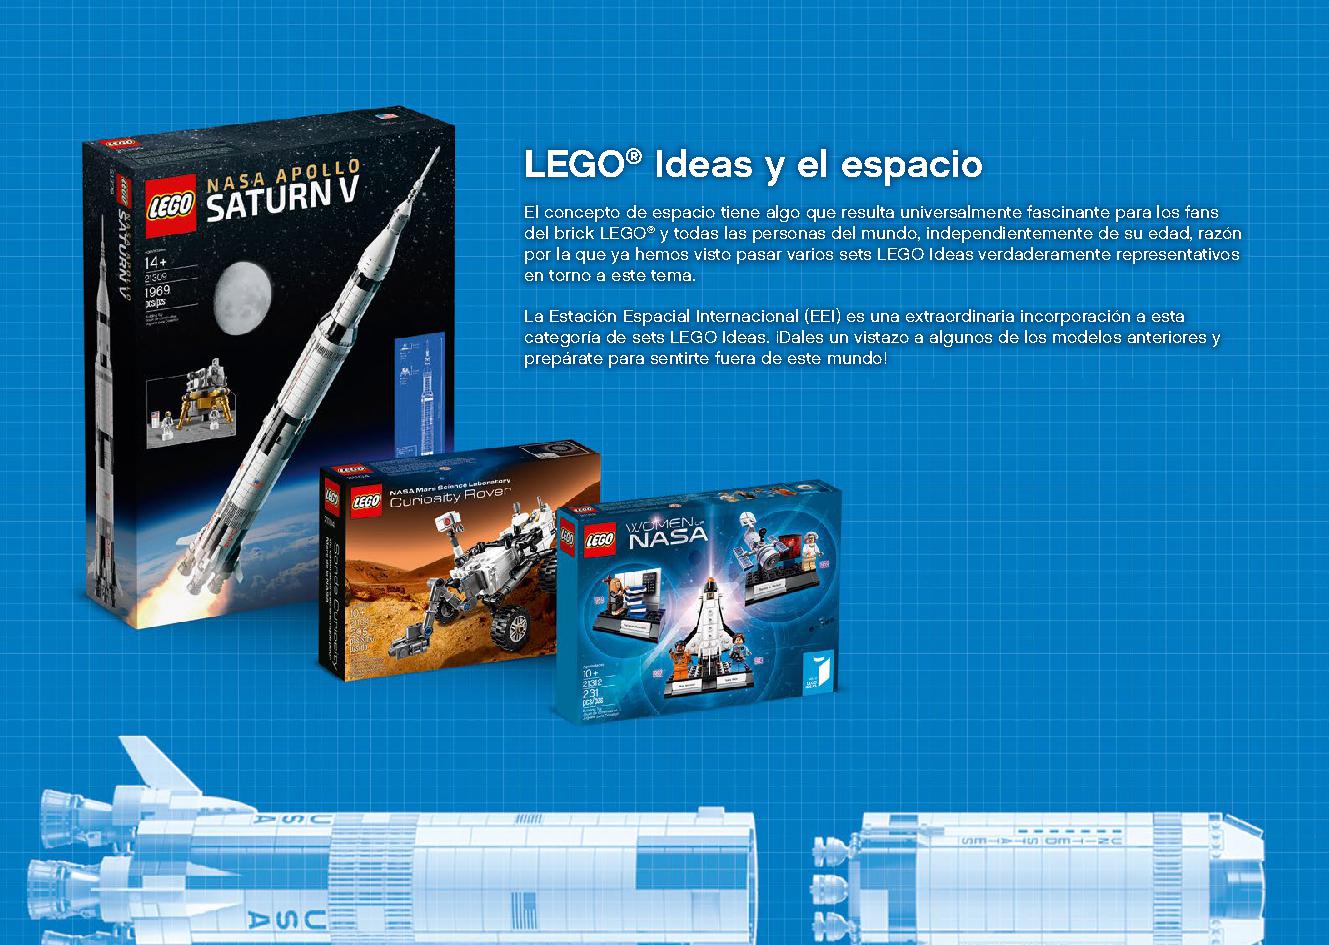 국제 우주 정거장 21321 레고 세트 제품정보 레고 조립설명서 30 page